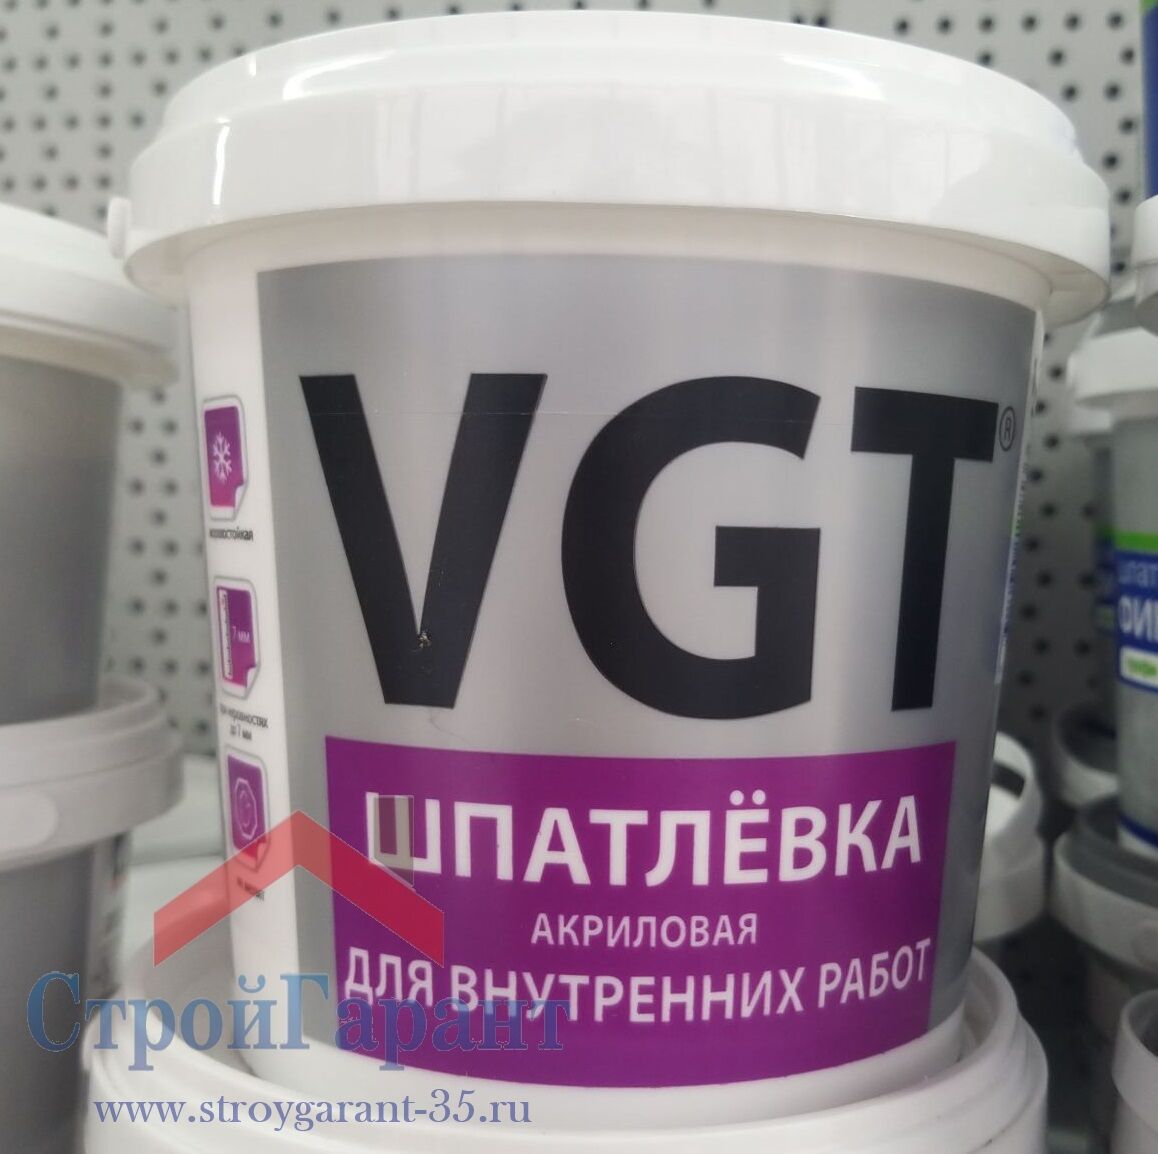 Шпатлевка готовая для внутренних работ VGT, банка 1,7 кг белая